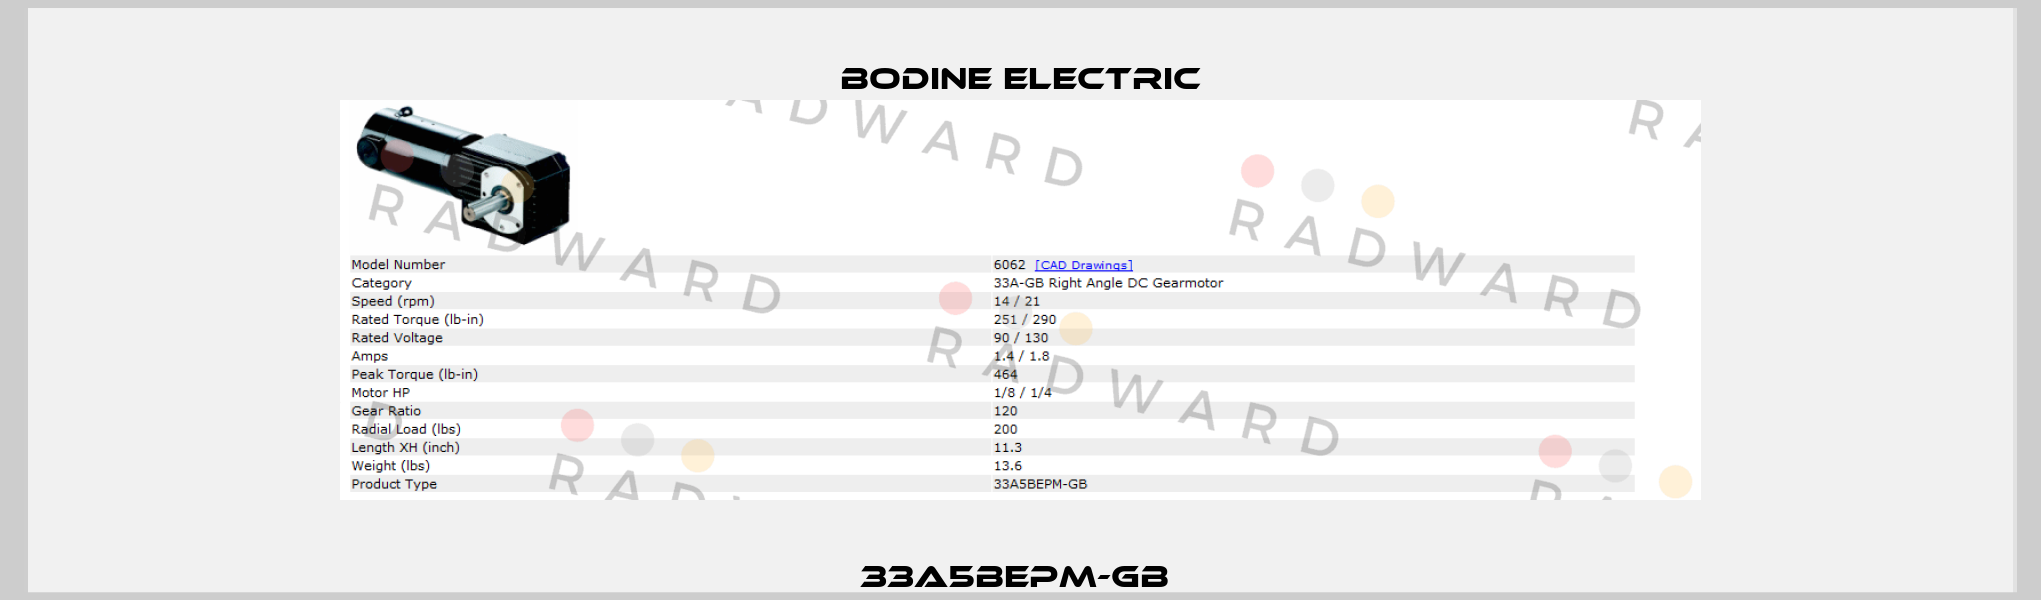 33A5BEPM-GB  BODINE ELECTRIC